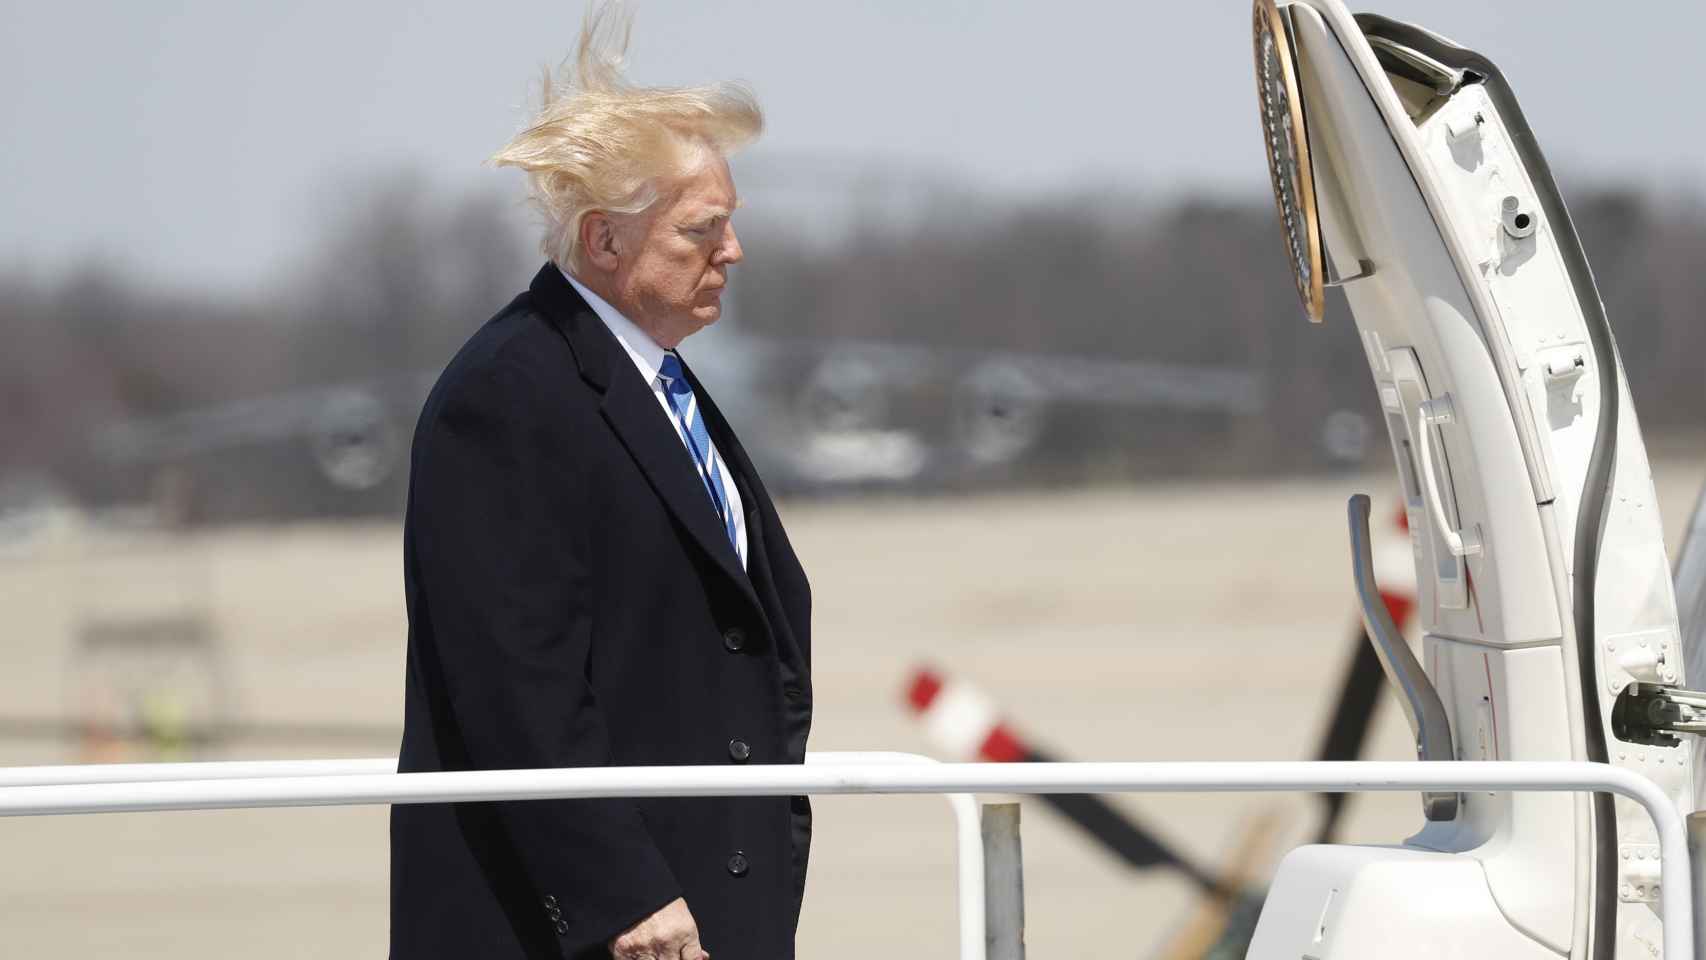 Donald Trump de camino a su avión